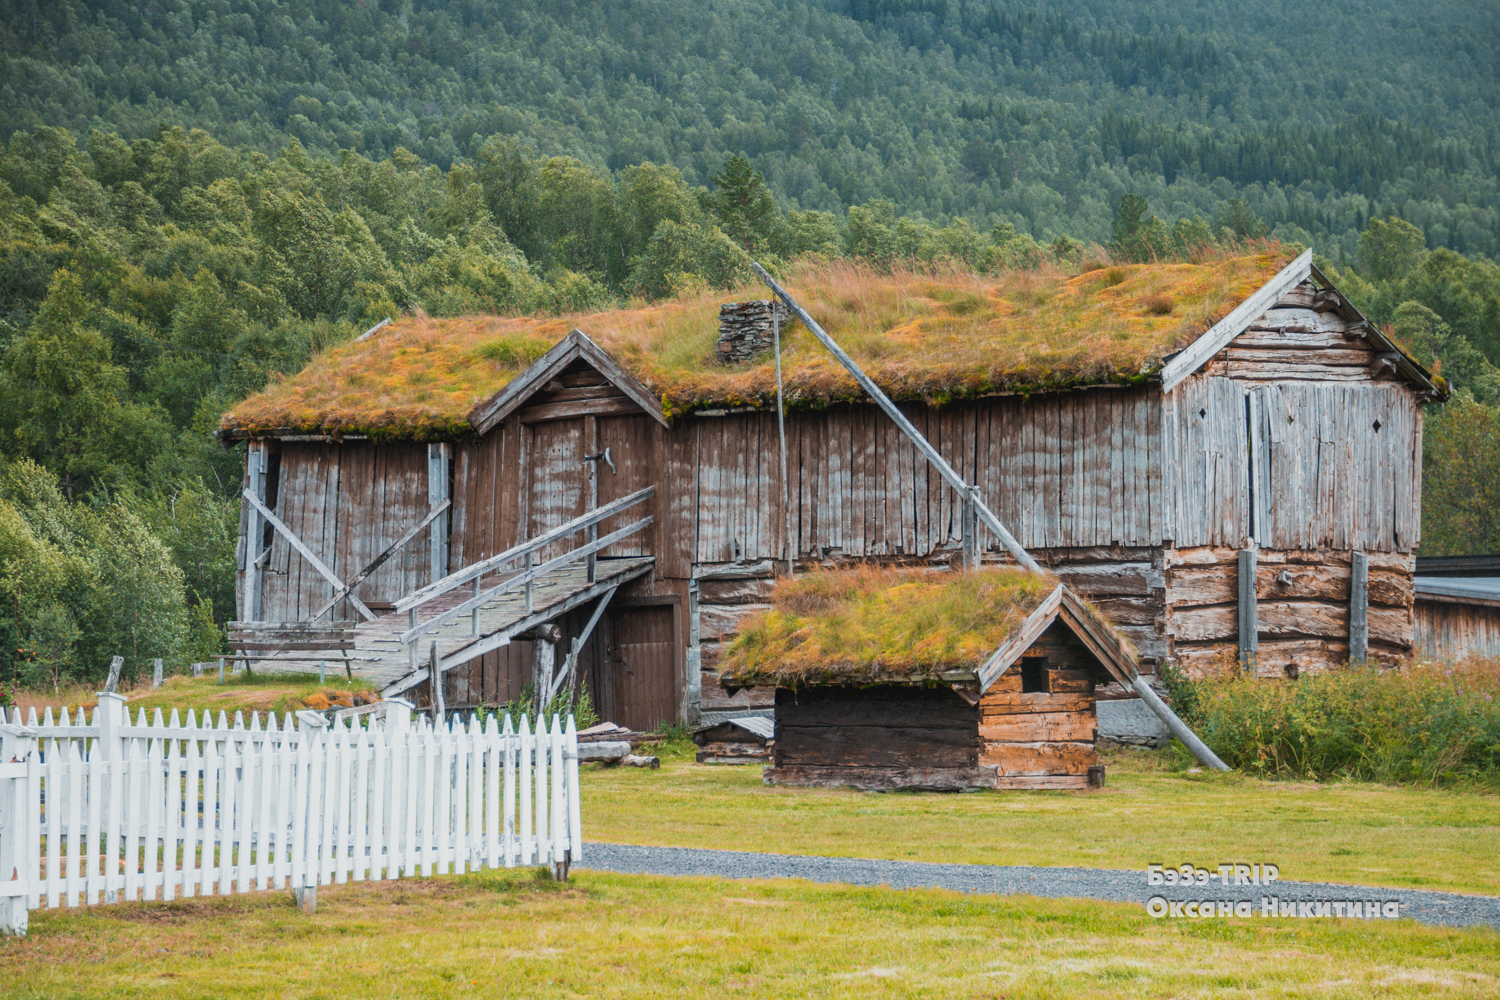 Овцы, которые пасутся на крыше дома. Зачем норвежцам трава на кровле и как над ними поэтому шутят соседи?:)2